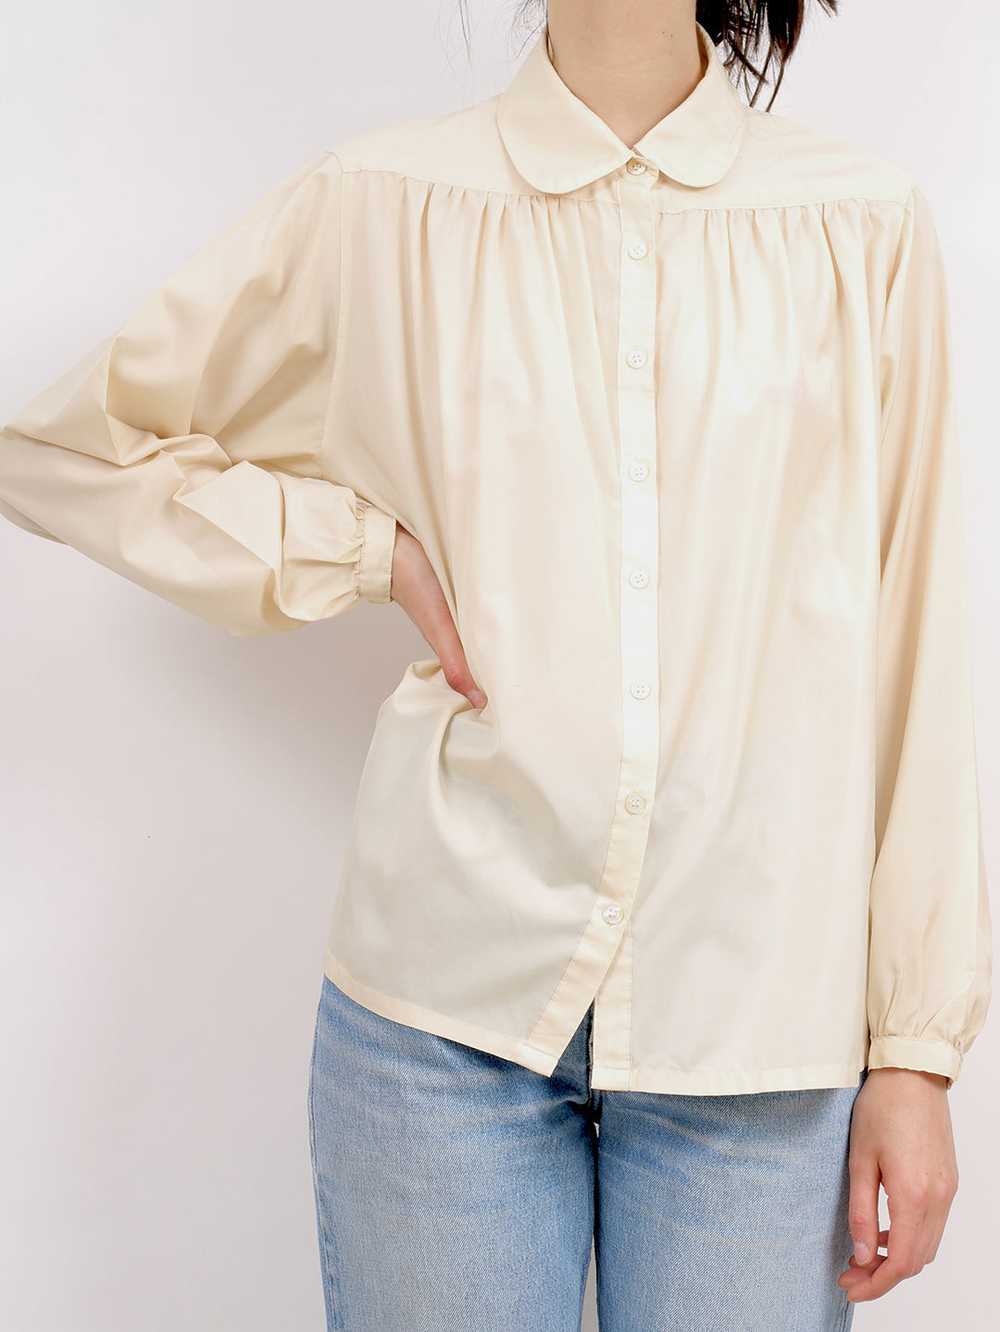 1970's peter pan blouse - image 2